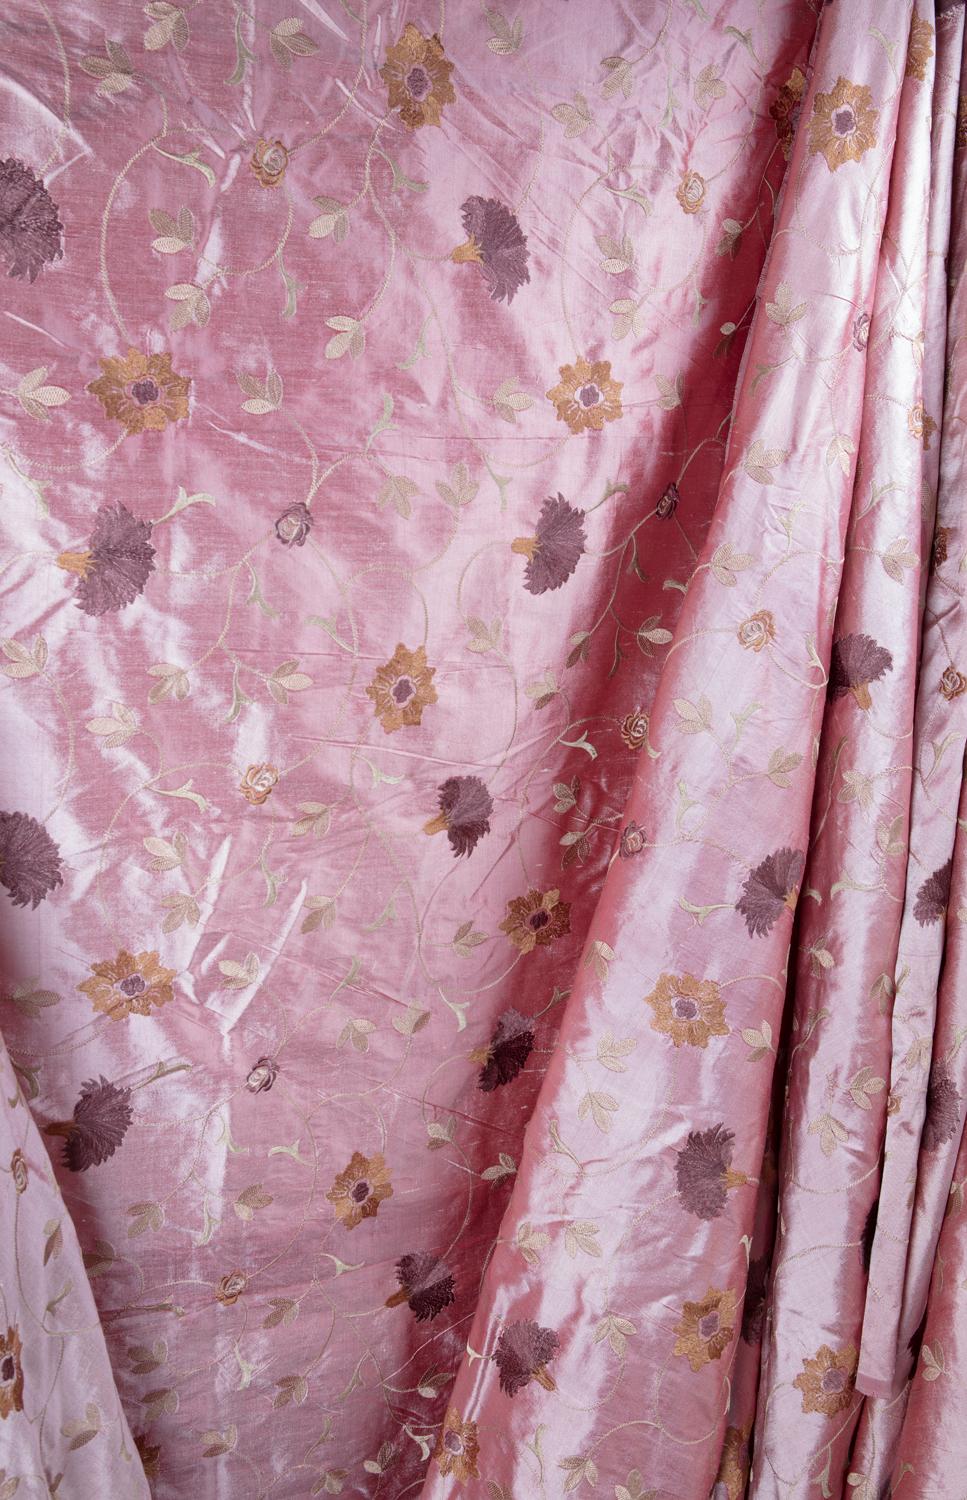 Anglo-indien Tissu de designer House Dupioni en soie rose poussiéreux, finement tissé à la main en vente